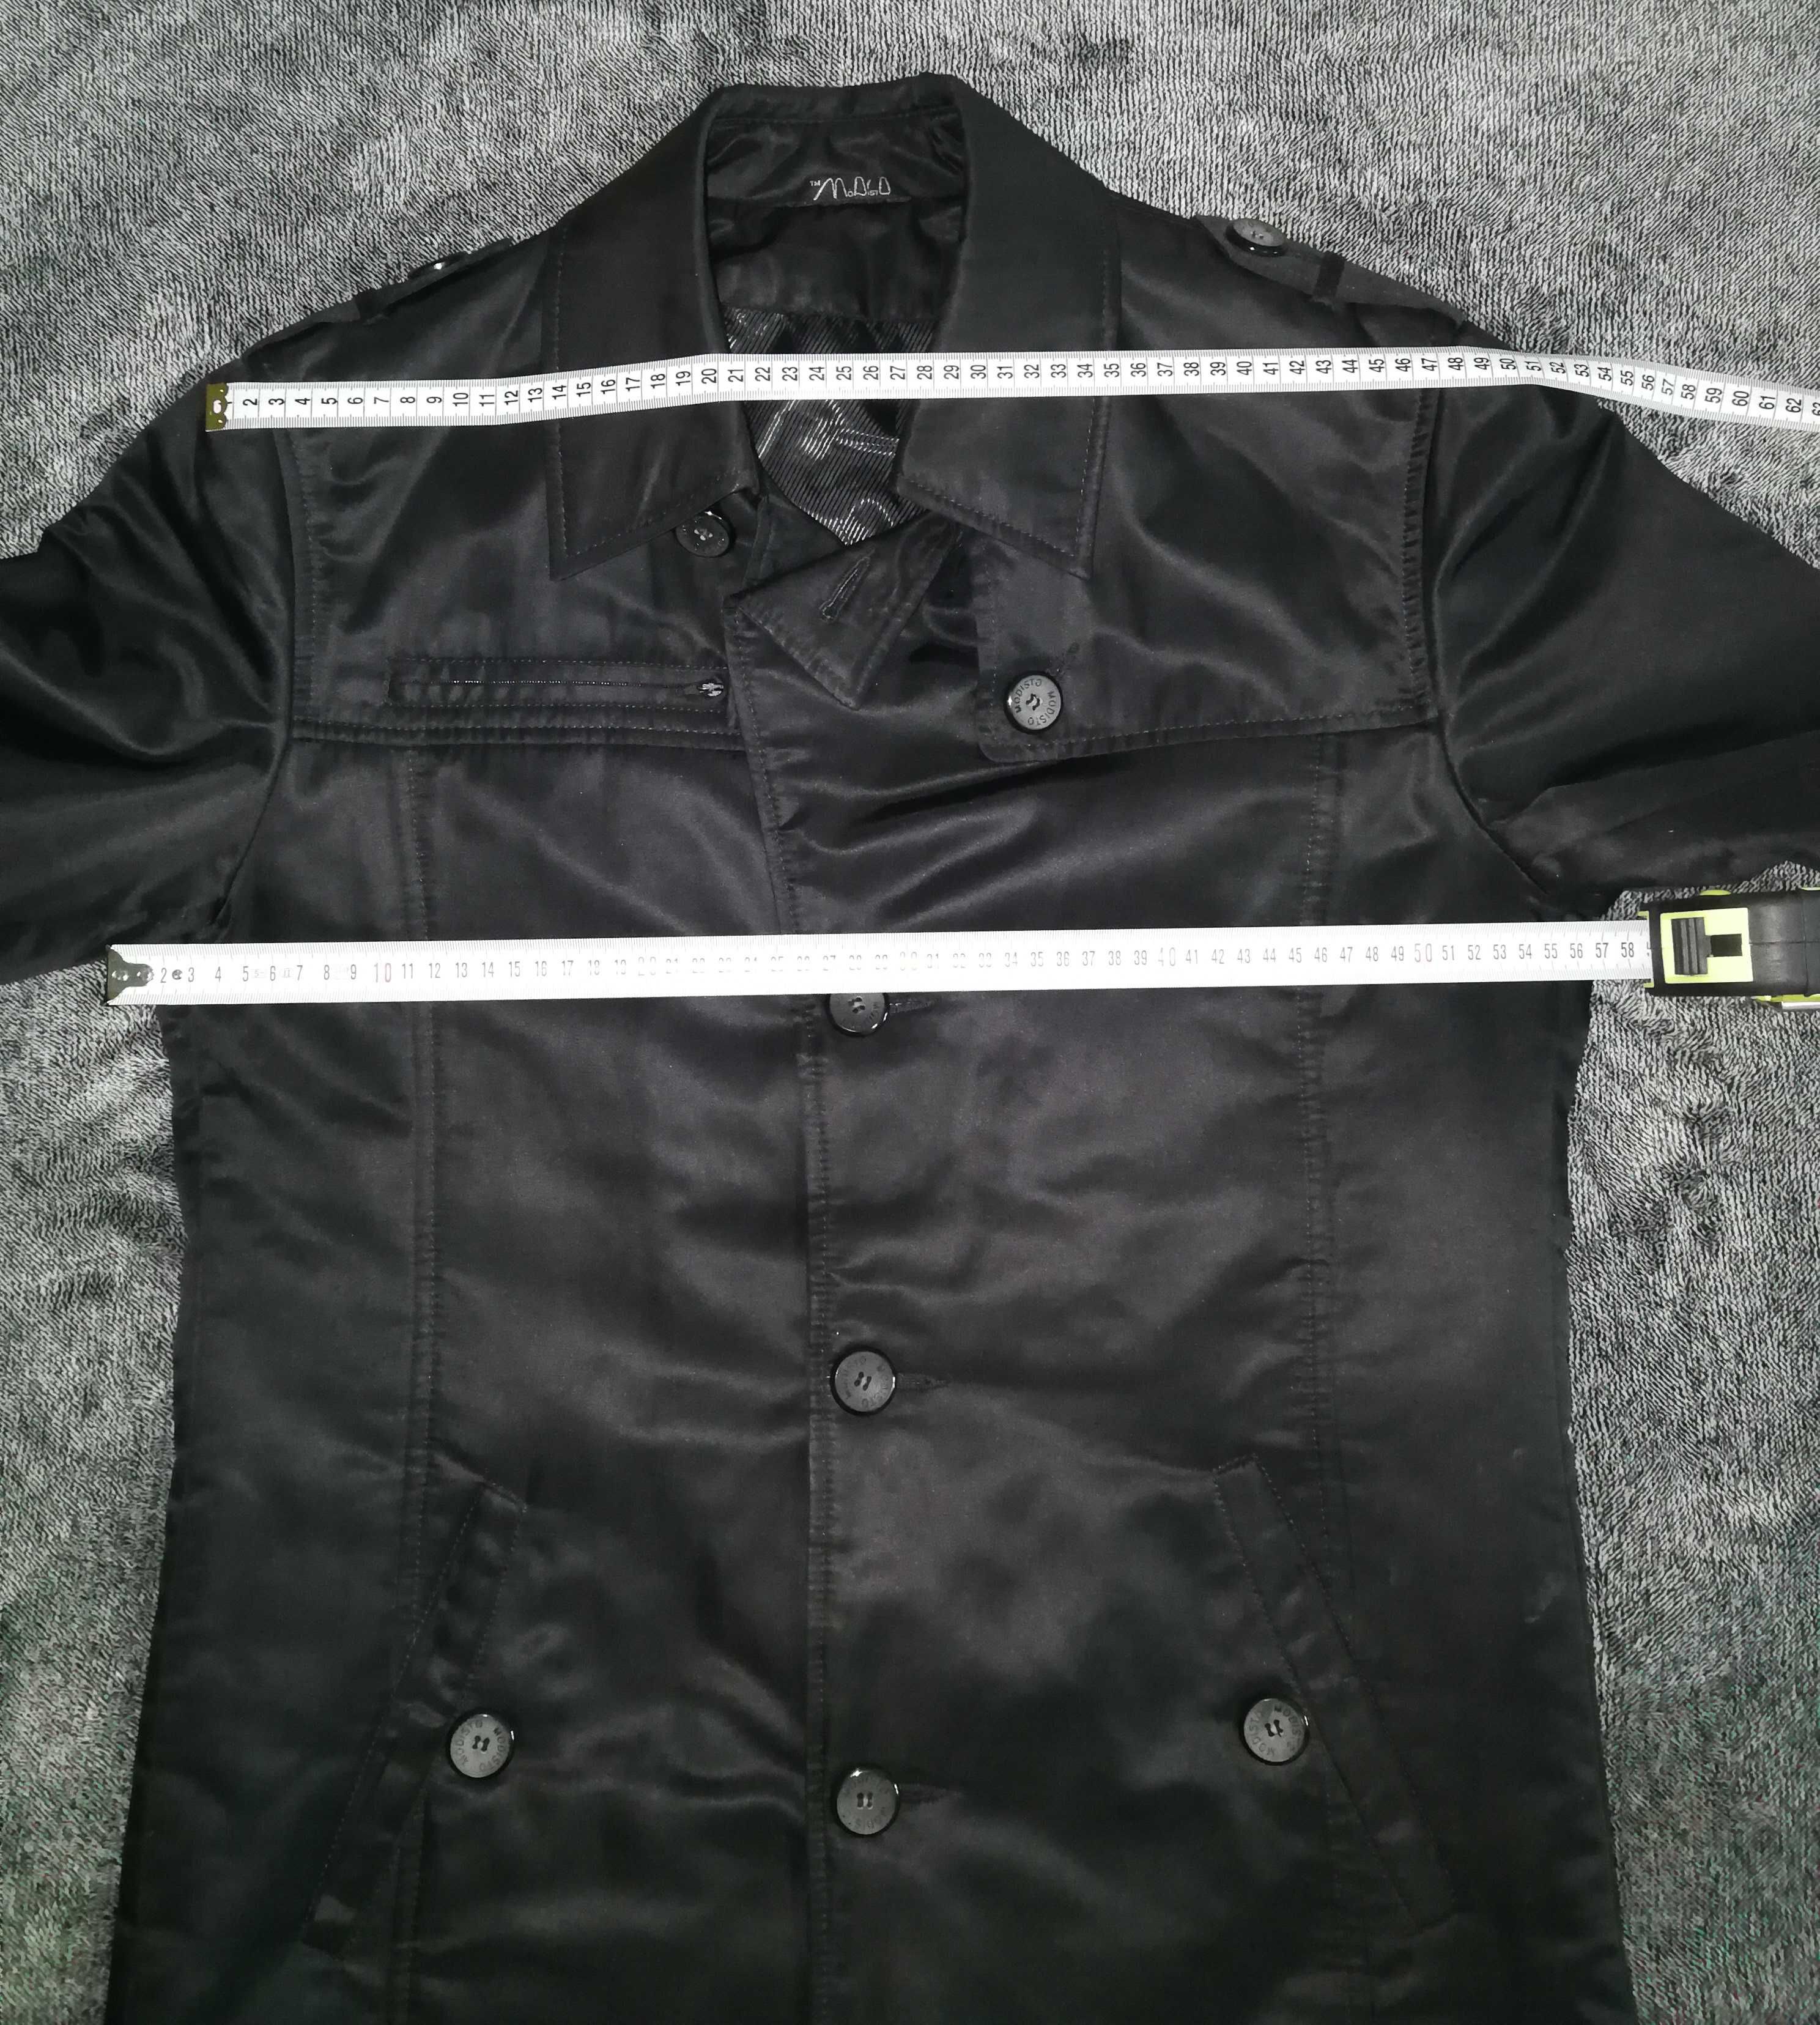 Куртка ModisTo нова р. 50-52 L пальто плащ чоловіче чорний весна осінь